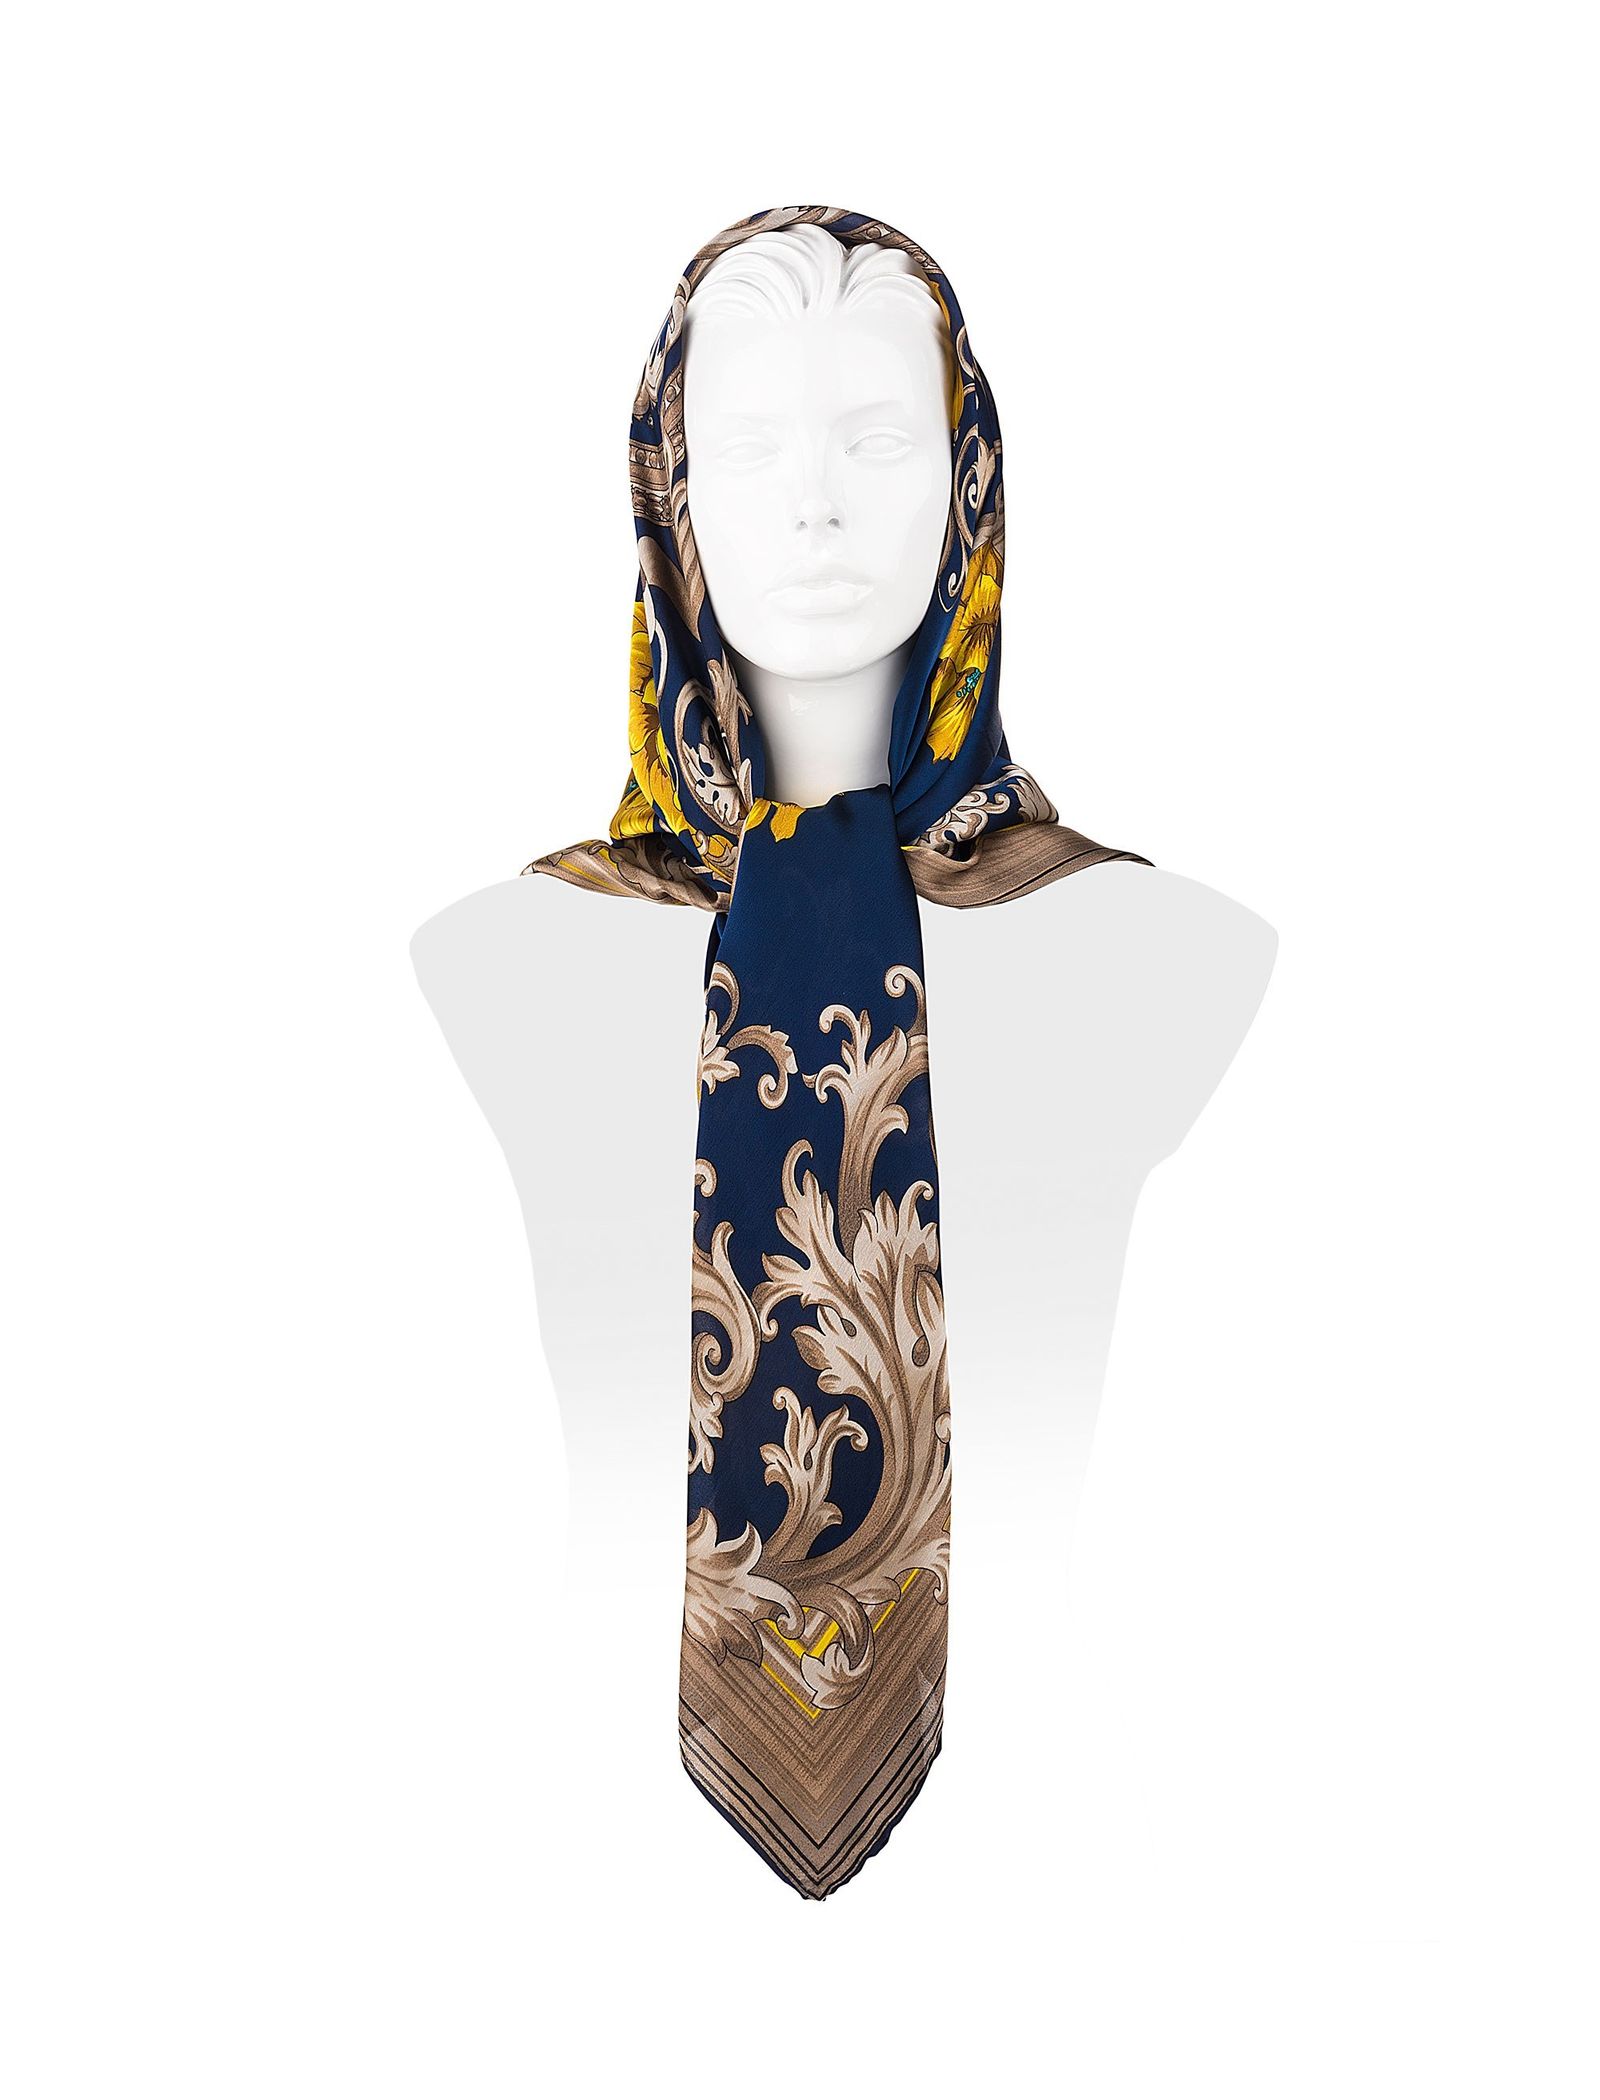 روسری ابریشمی زنانه - رزتی - سرمه اي و قهوه اي - 1